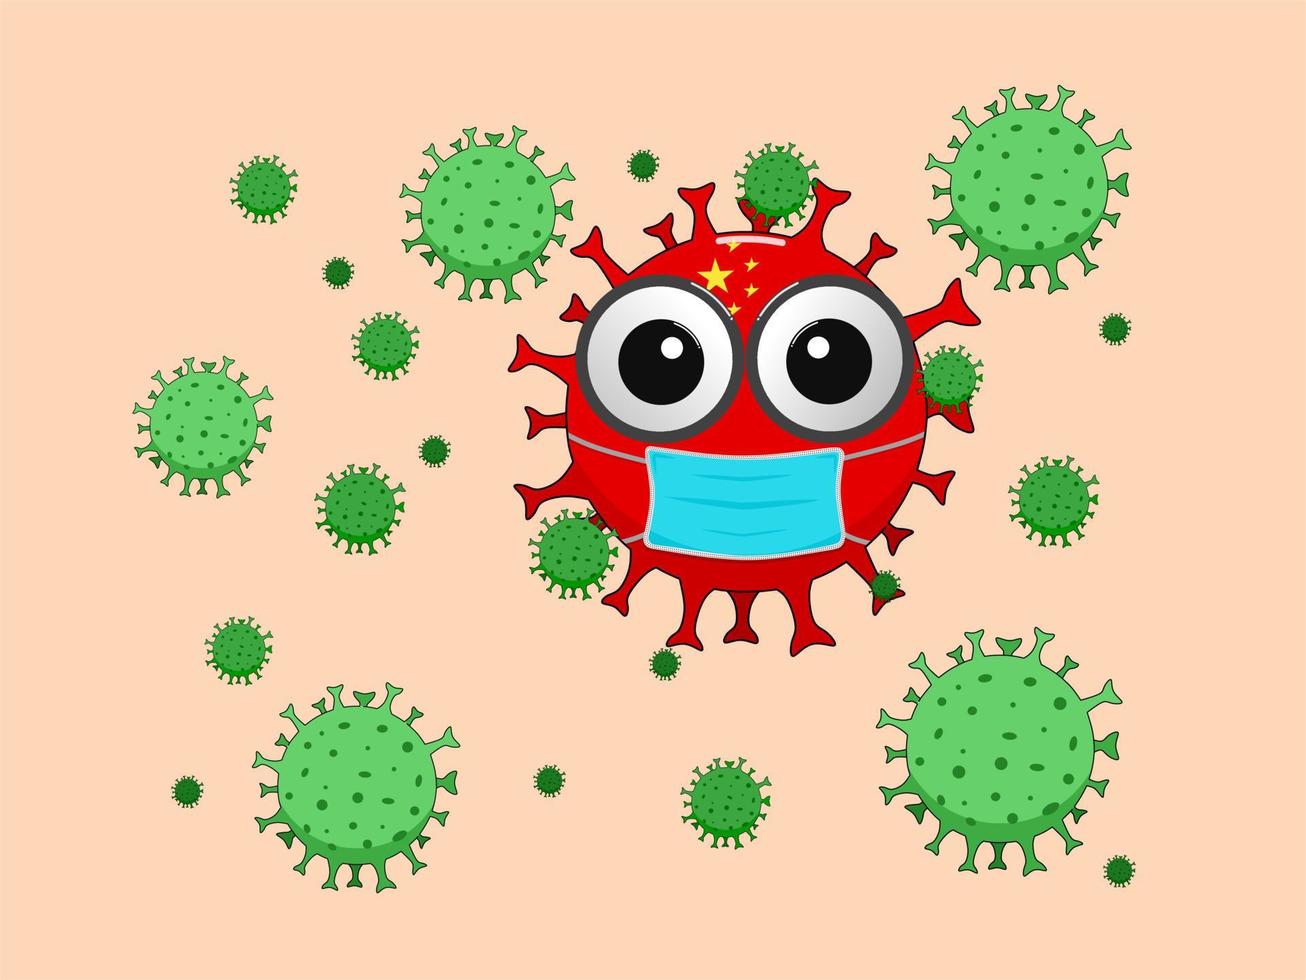 ilustração do vírus corona, um personagem bacteriano no fundo da bandeira chinesa usando uma máscara, cercado por bactérias do vírus corona vetor